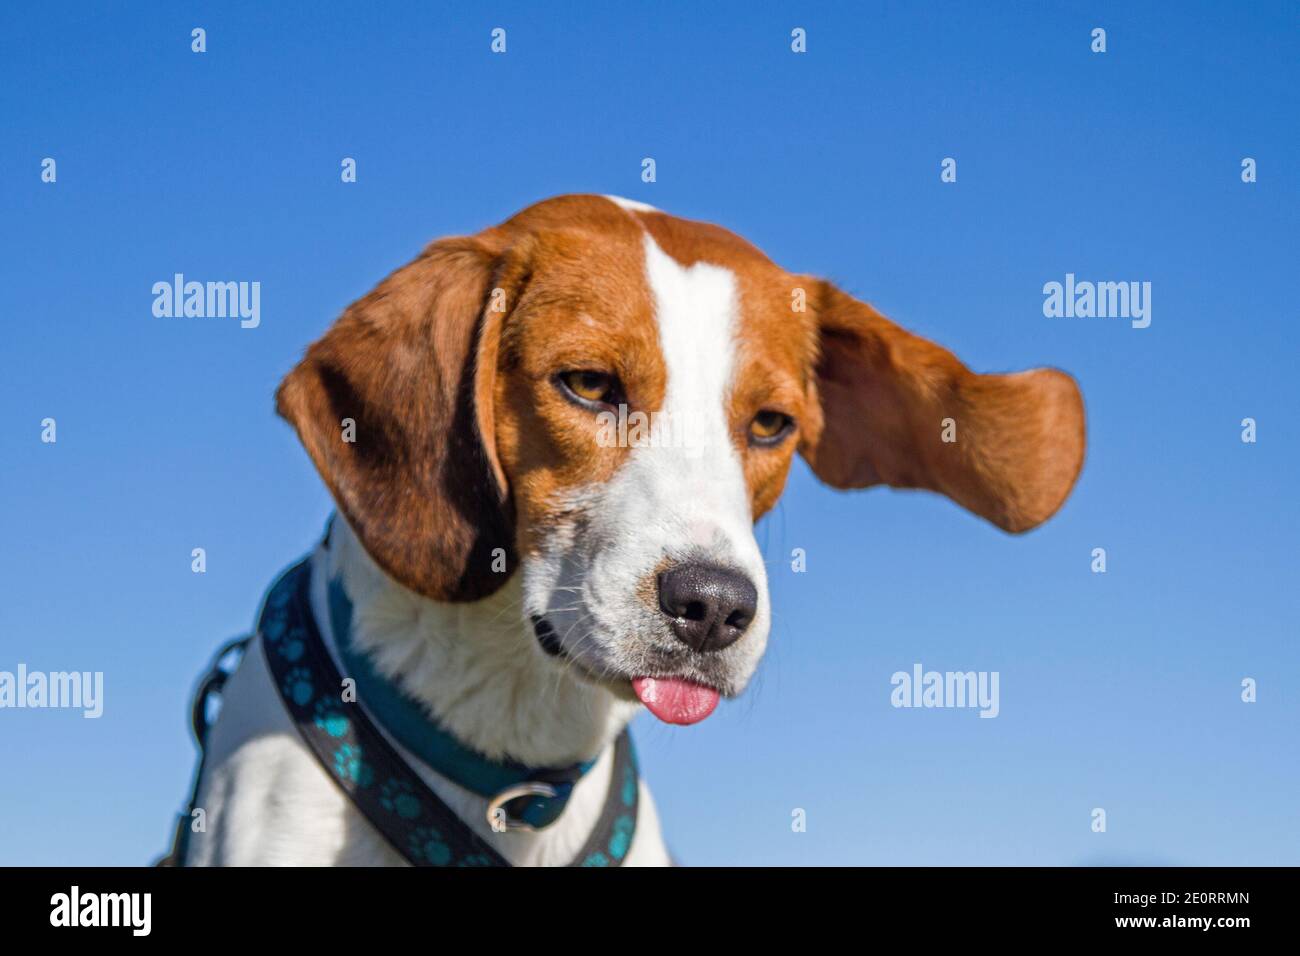 Der Starke Föhnwind Auf Dem Gipfel Des Berges Lässt die Beagle S Ohren flattern Stockfoto